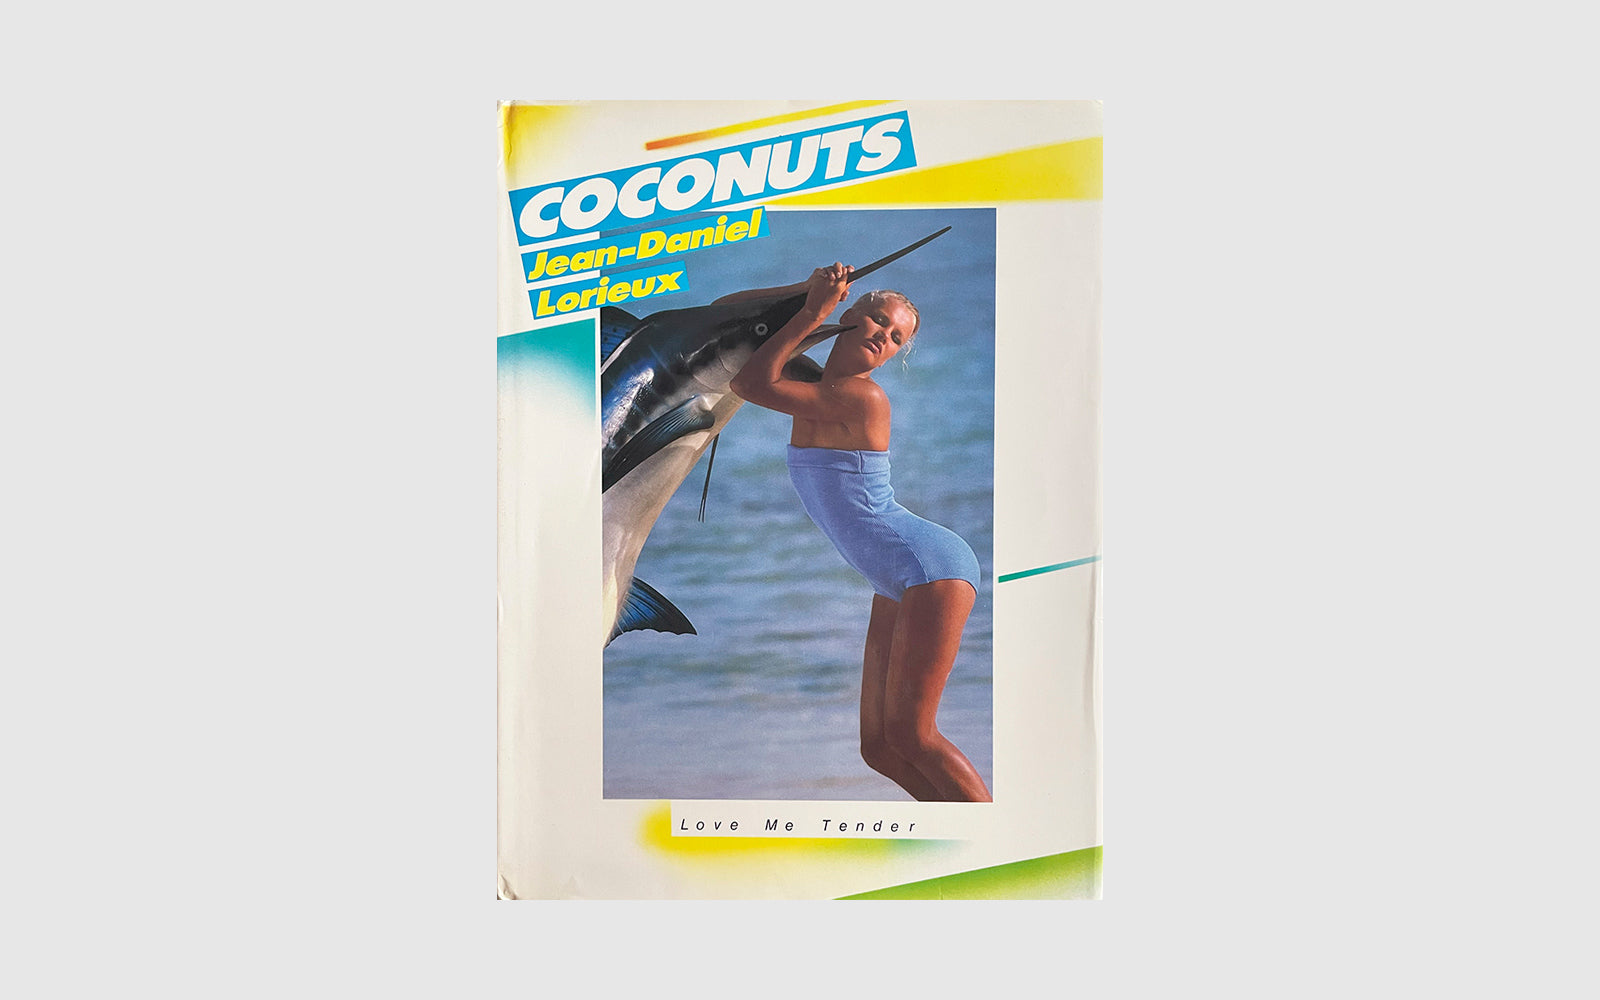 フランス80年代写真集Coconuts　\nJean-Daniel Lorieux